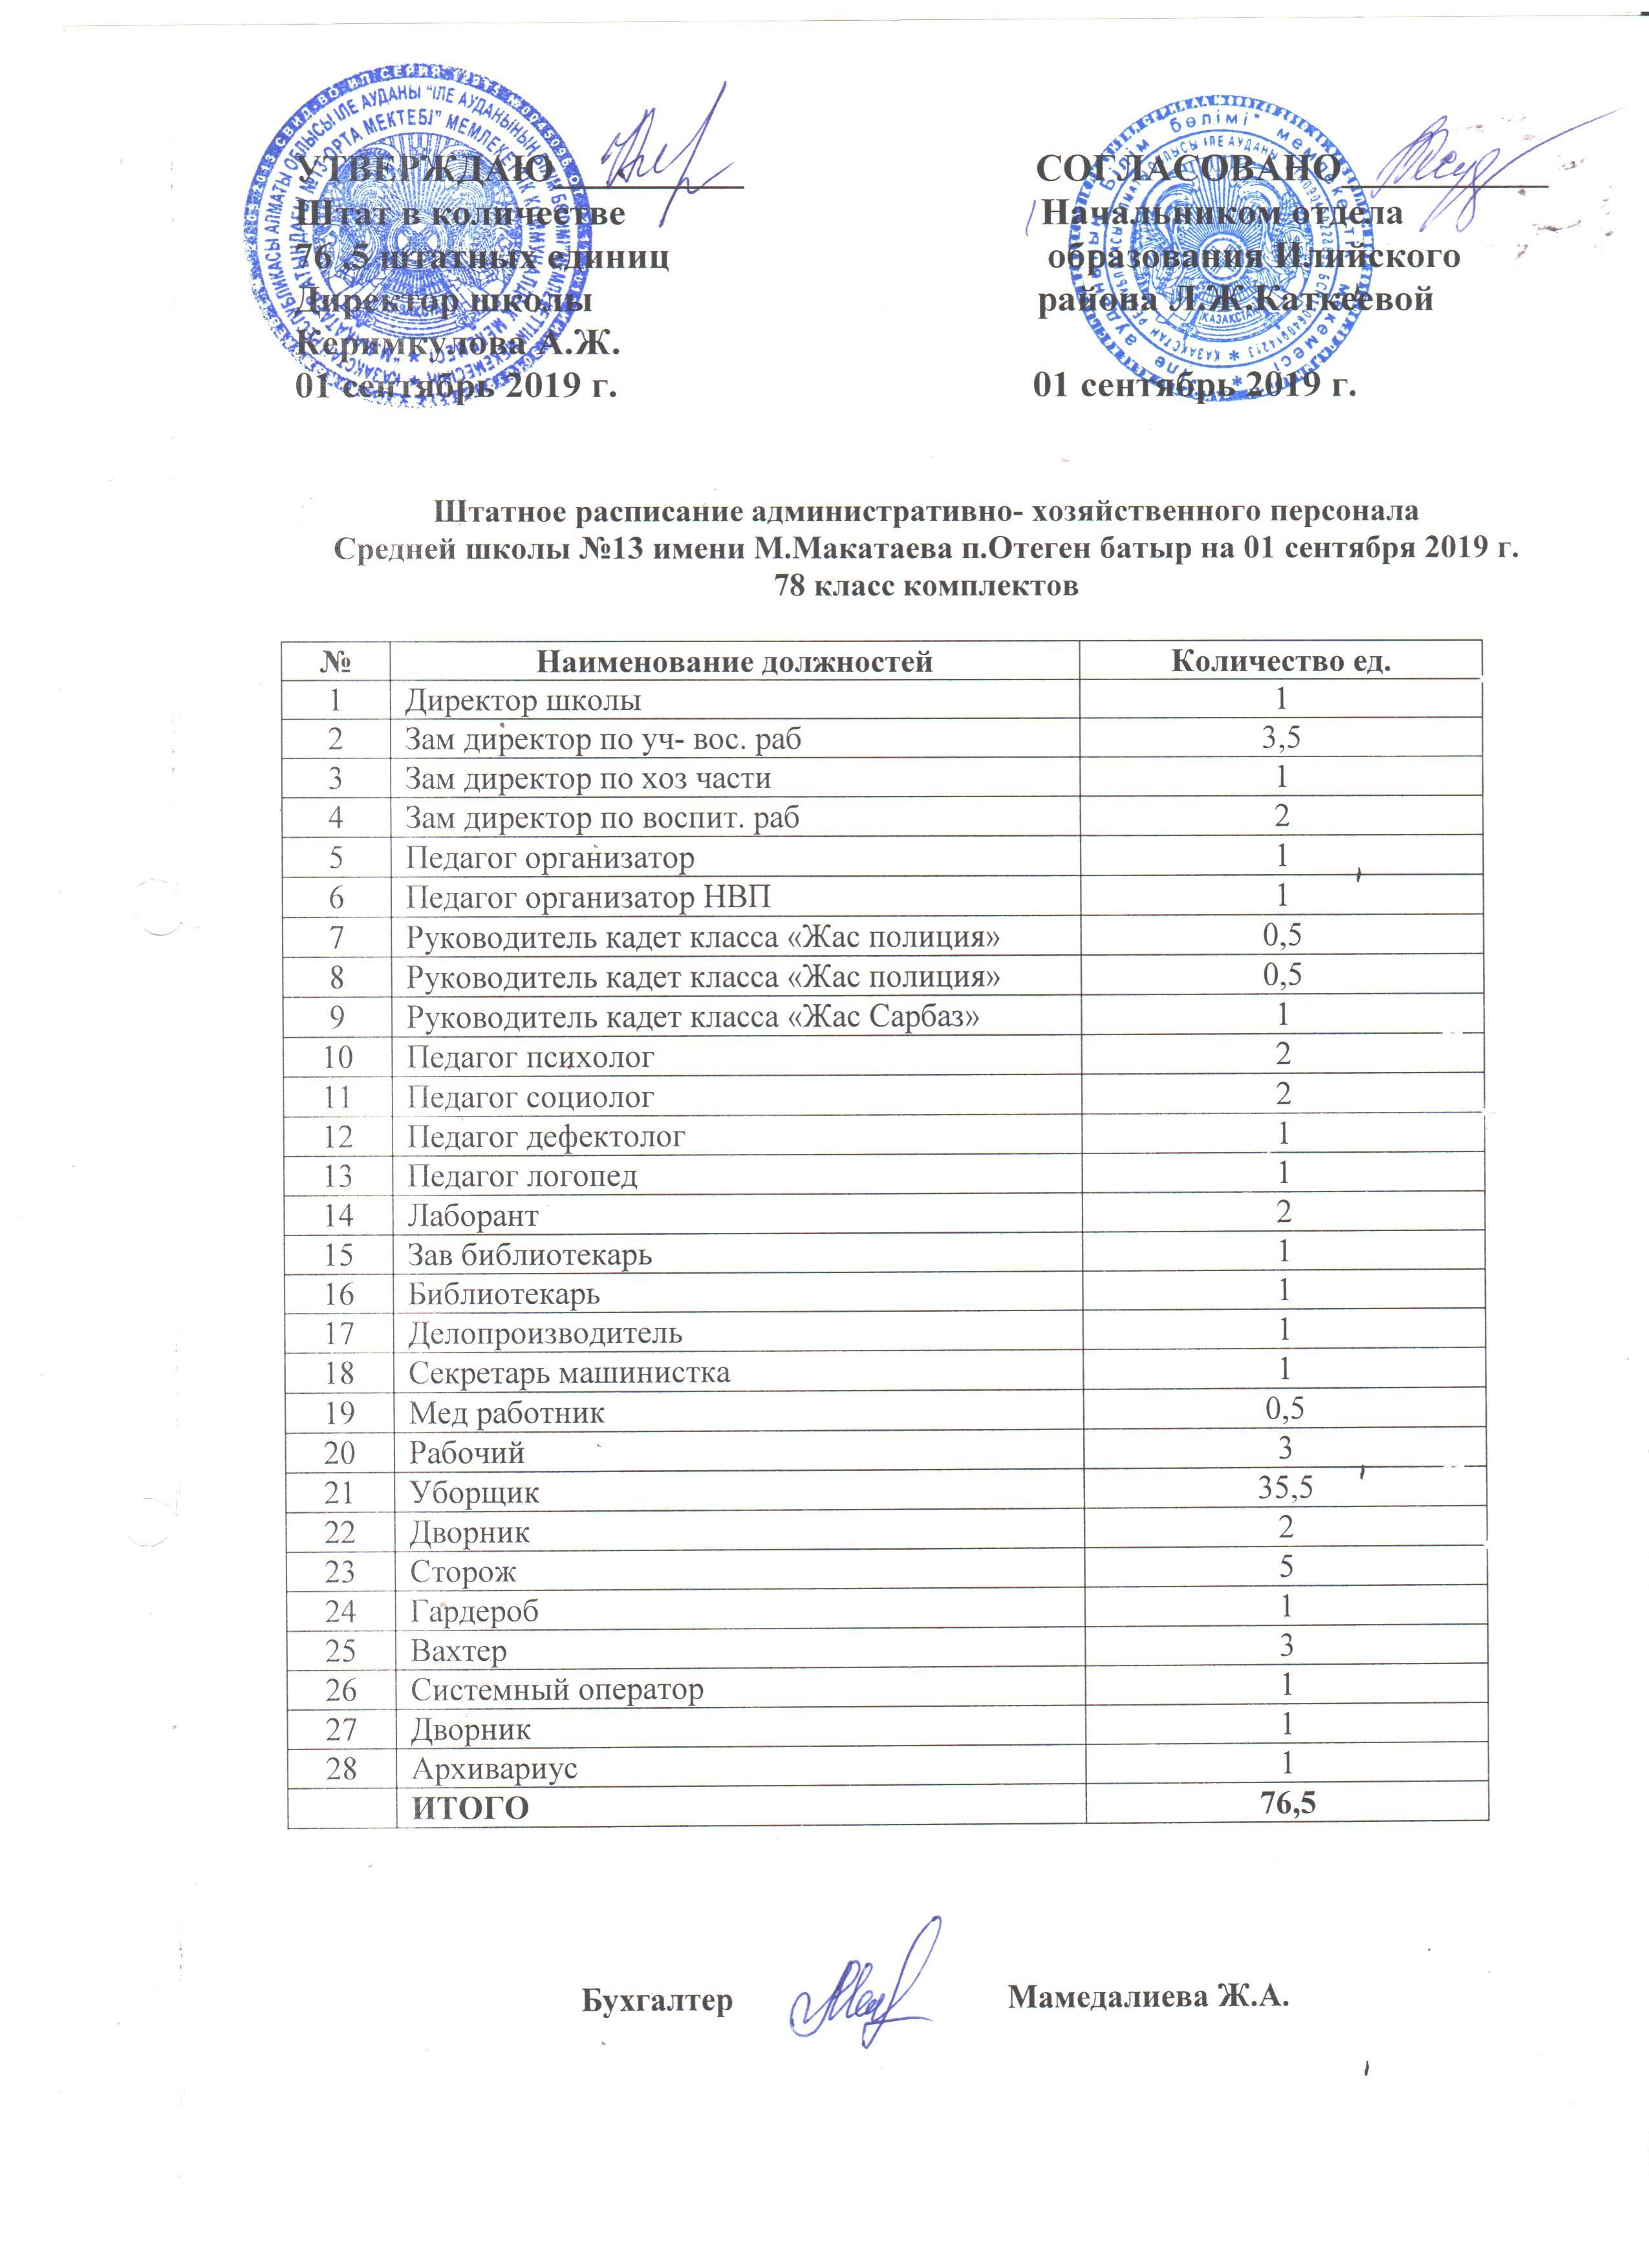 Тарификационный список школы №13 им М.Макатаева, Штатное расписание